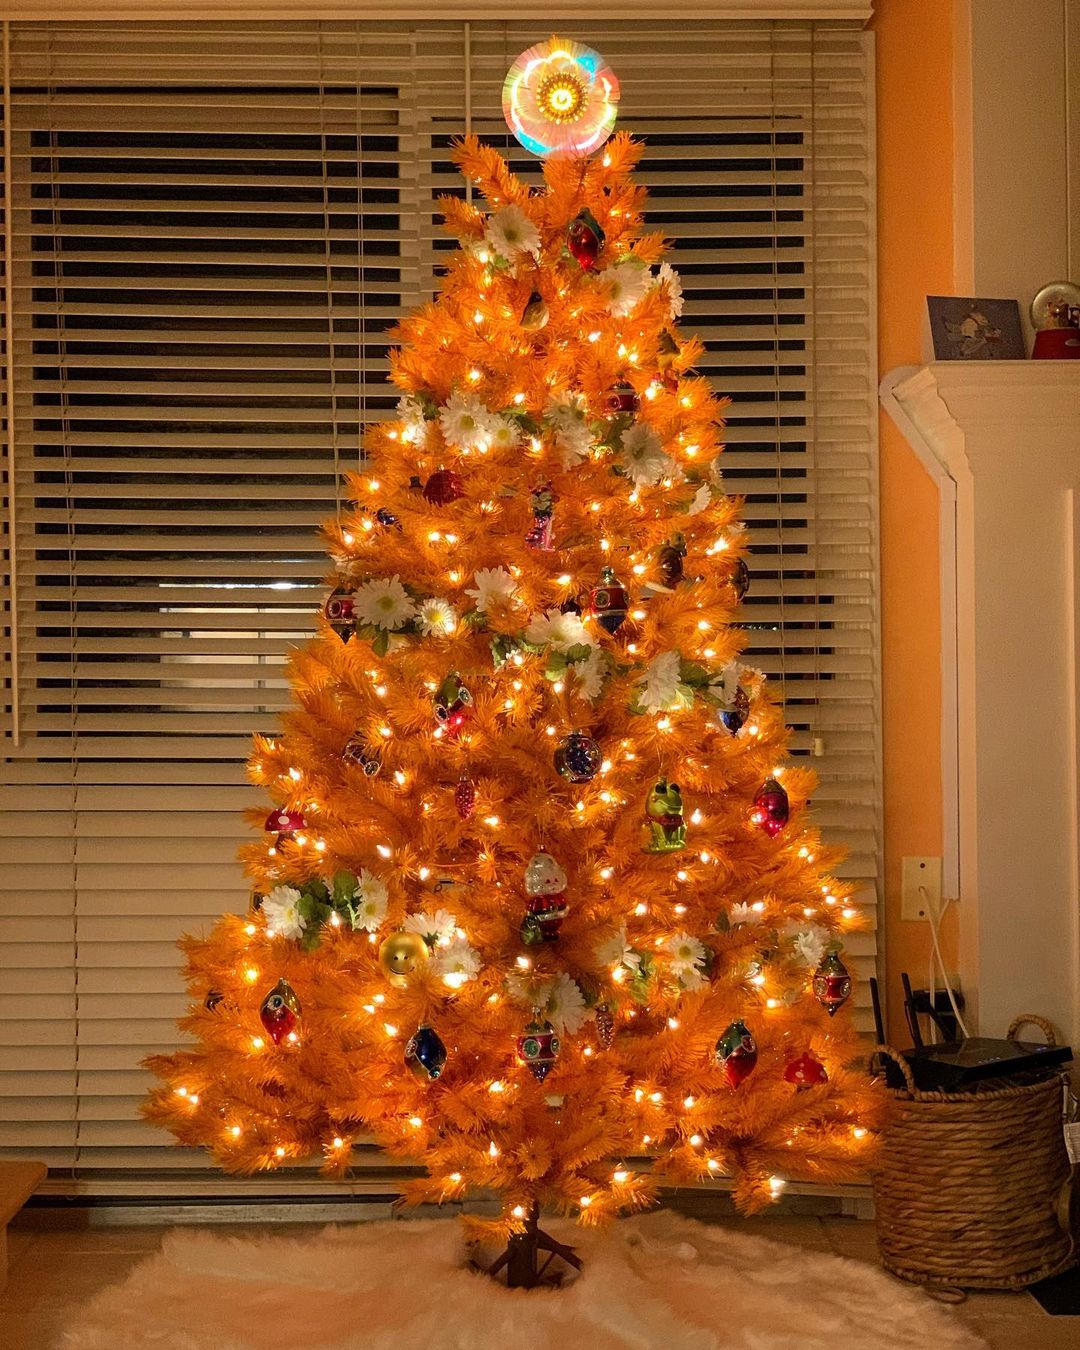 decoracion navideña naranja